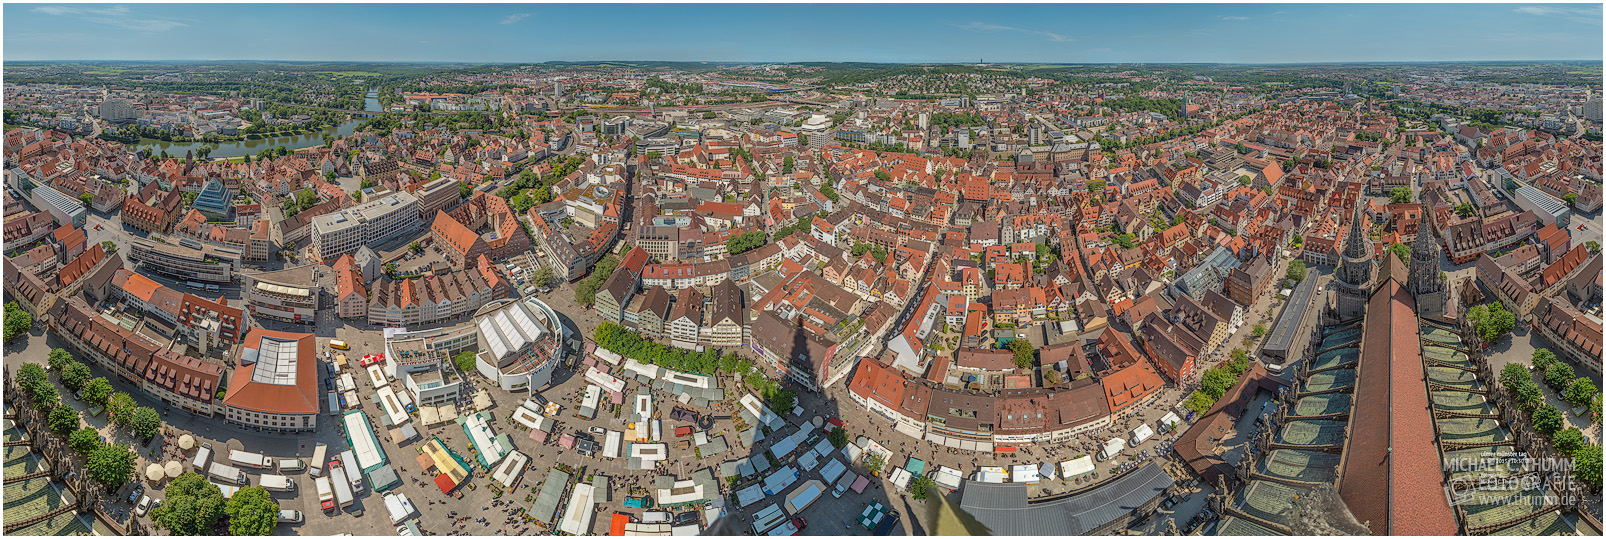 Panoramafotografie mit 360°-Blickwinkel vom Ulmer Münster